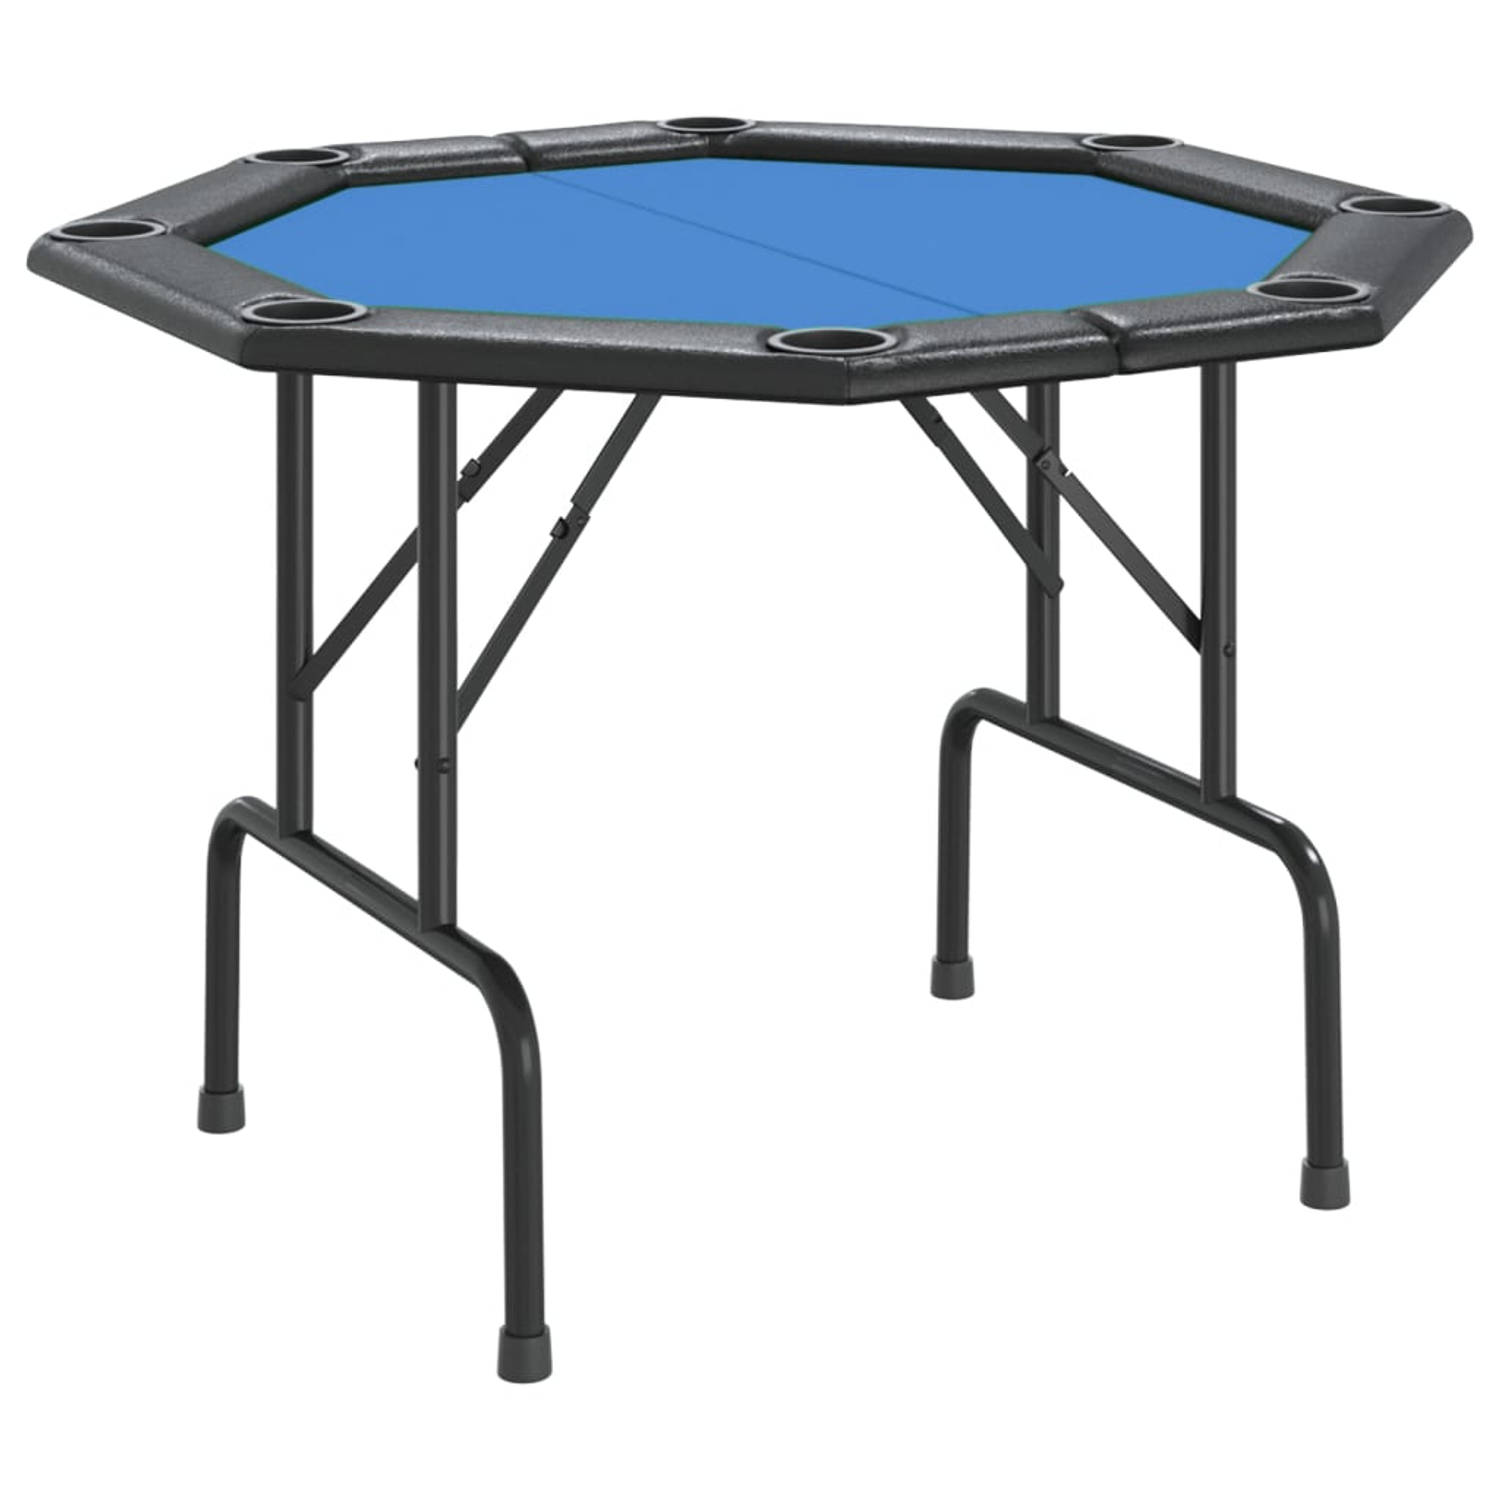 The Living Store Pokertafel - Inklapbaar - 108 x 108 x 75 cm - Zacht tafelblad - Ingebouwde bekerhouders - Comfortabele